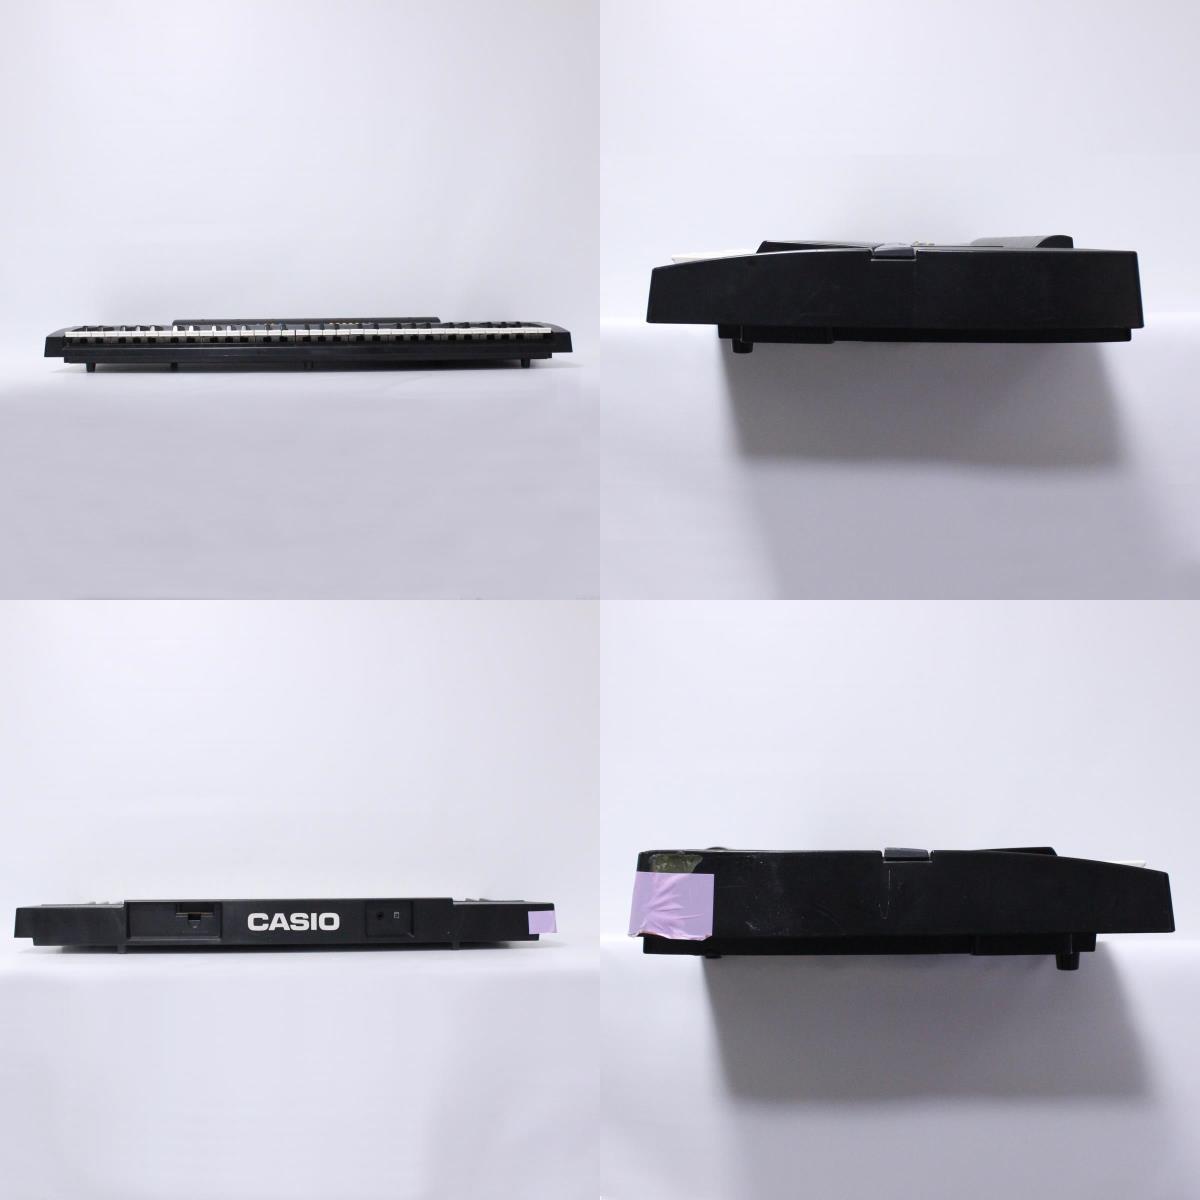 CASIOlCTK-480l61 keyboard l electron keyboard l battery drive ( un- possible )l Casio l200165